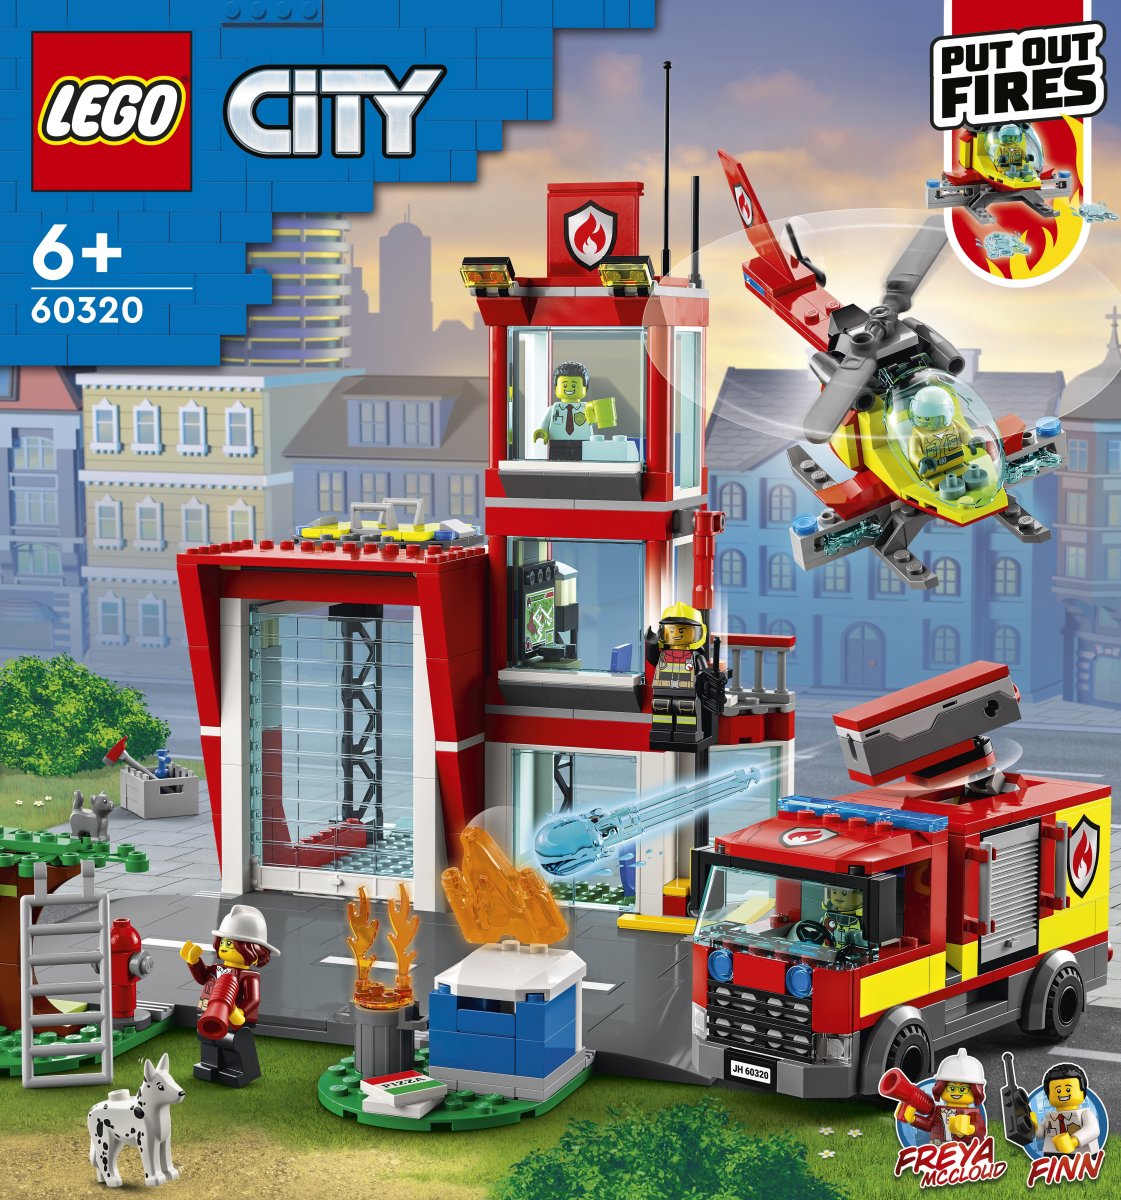 LEGO City 60320 6+ |